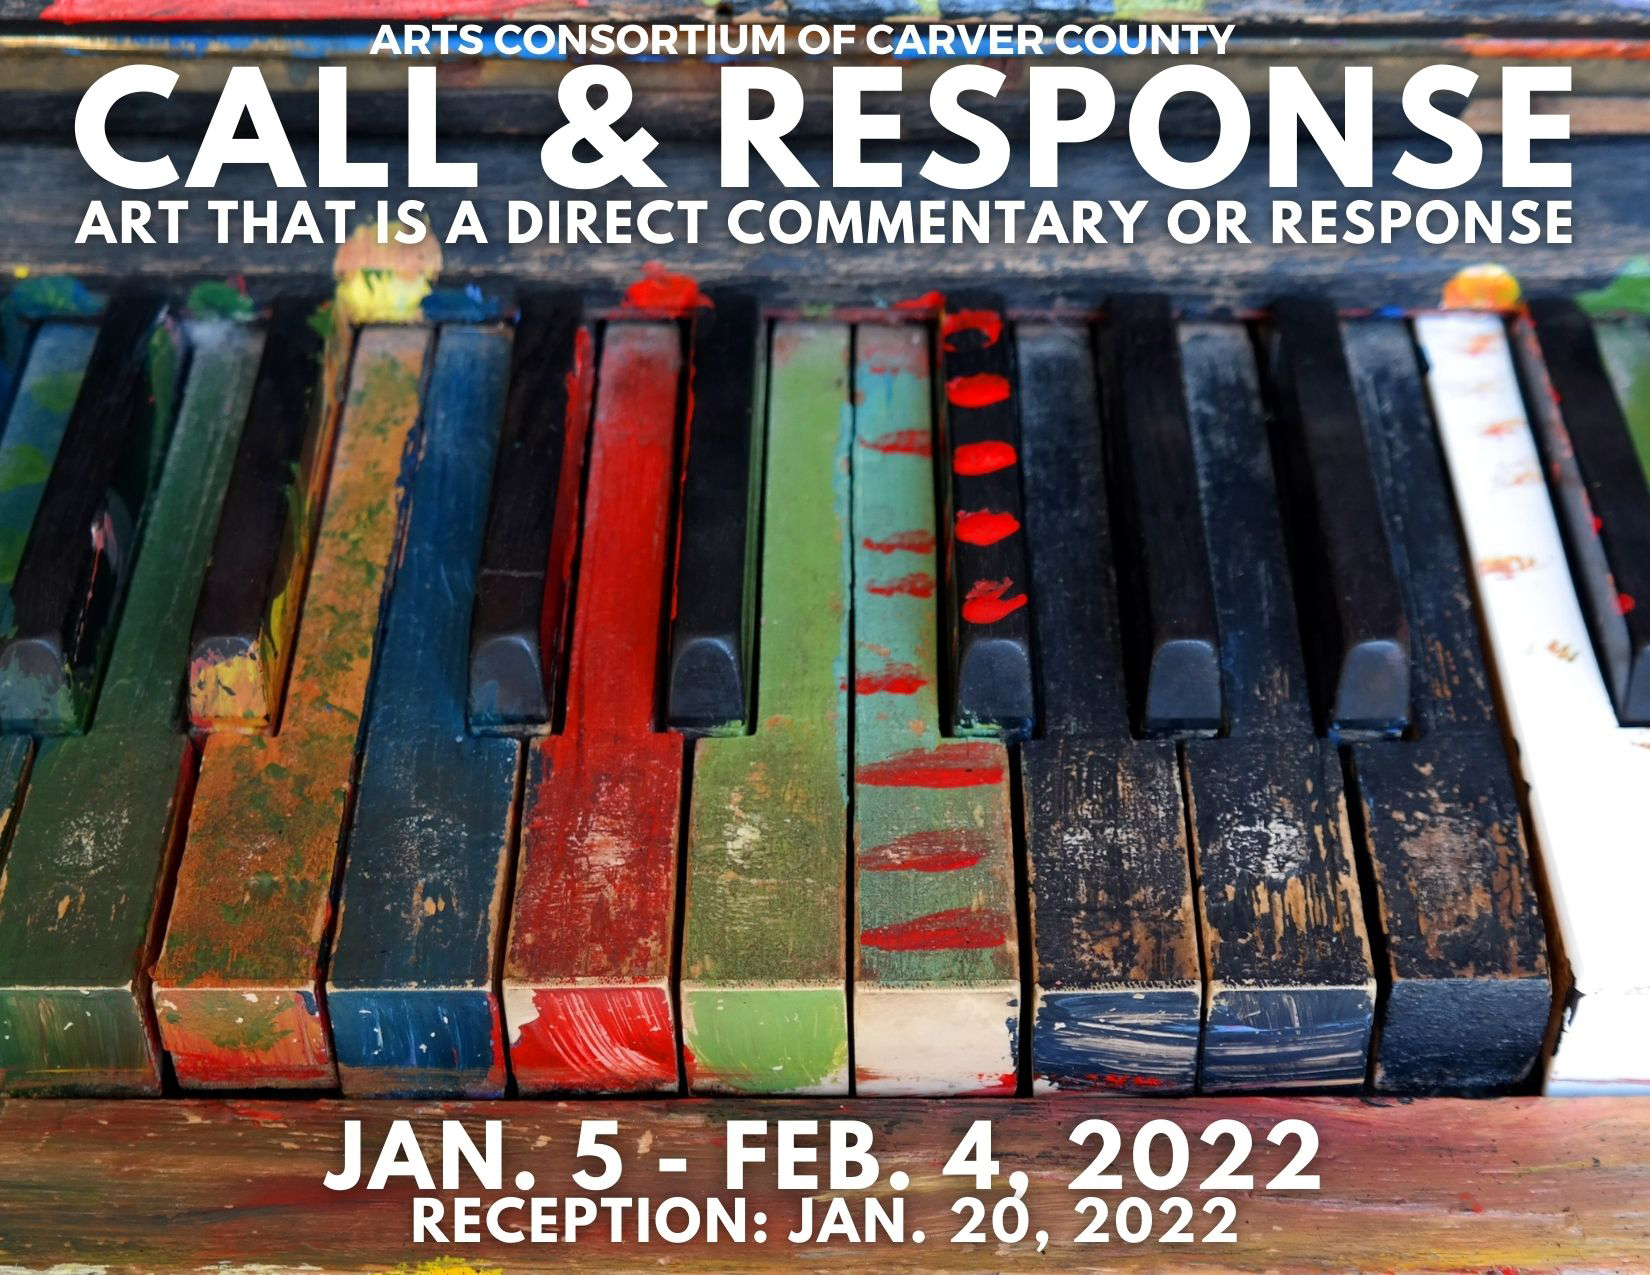 Call & Response Exhibit